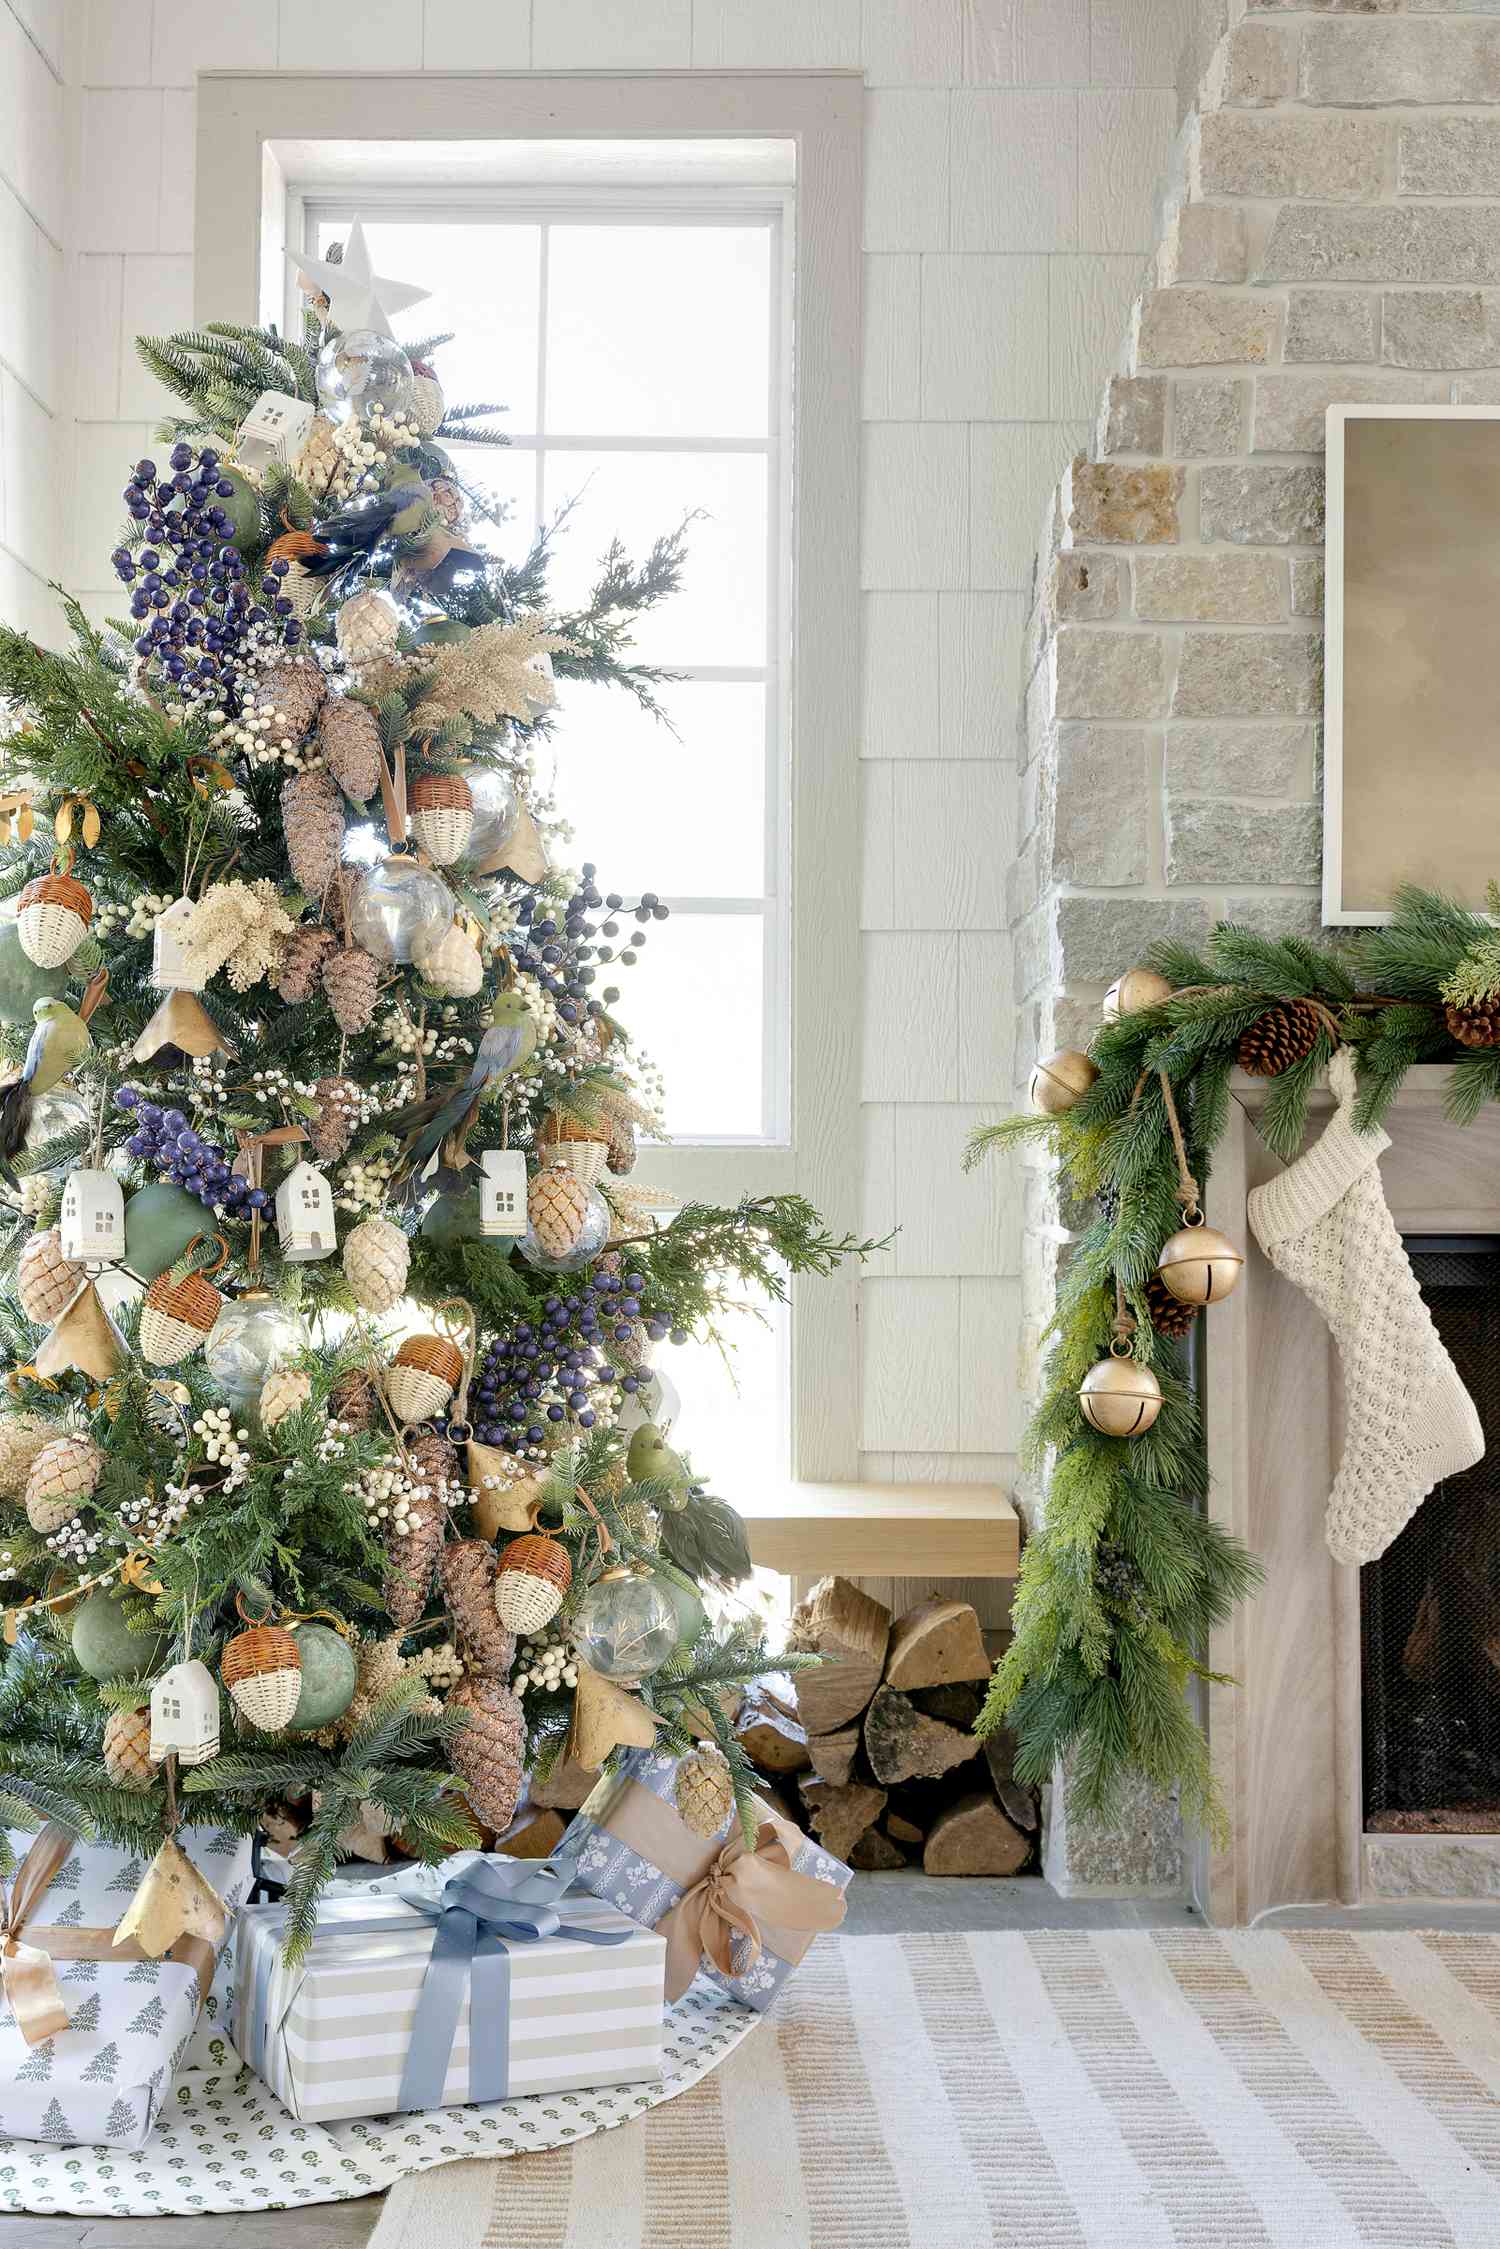 Von der Ernte inspirierter Weihnachtsbaum mit Eichelornamenten und Grünzeug.